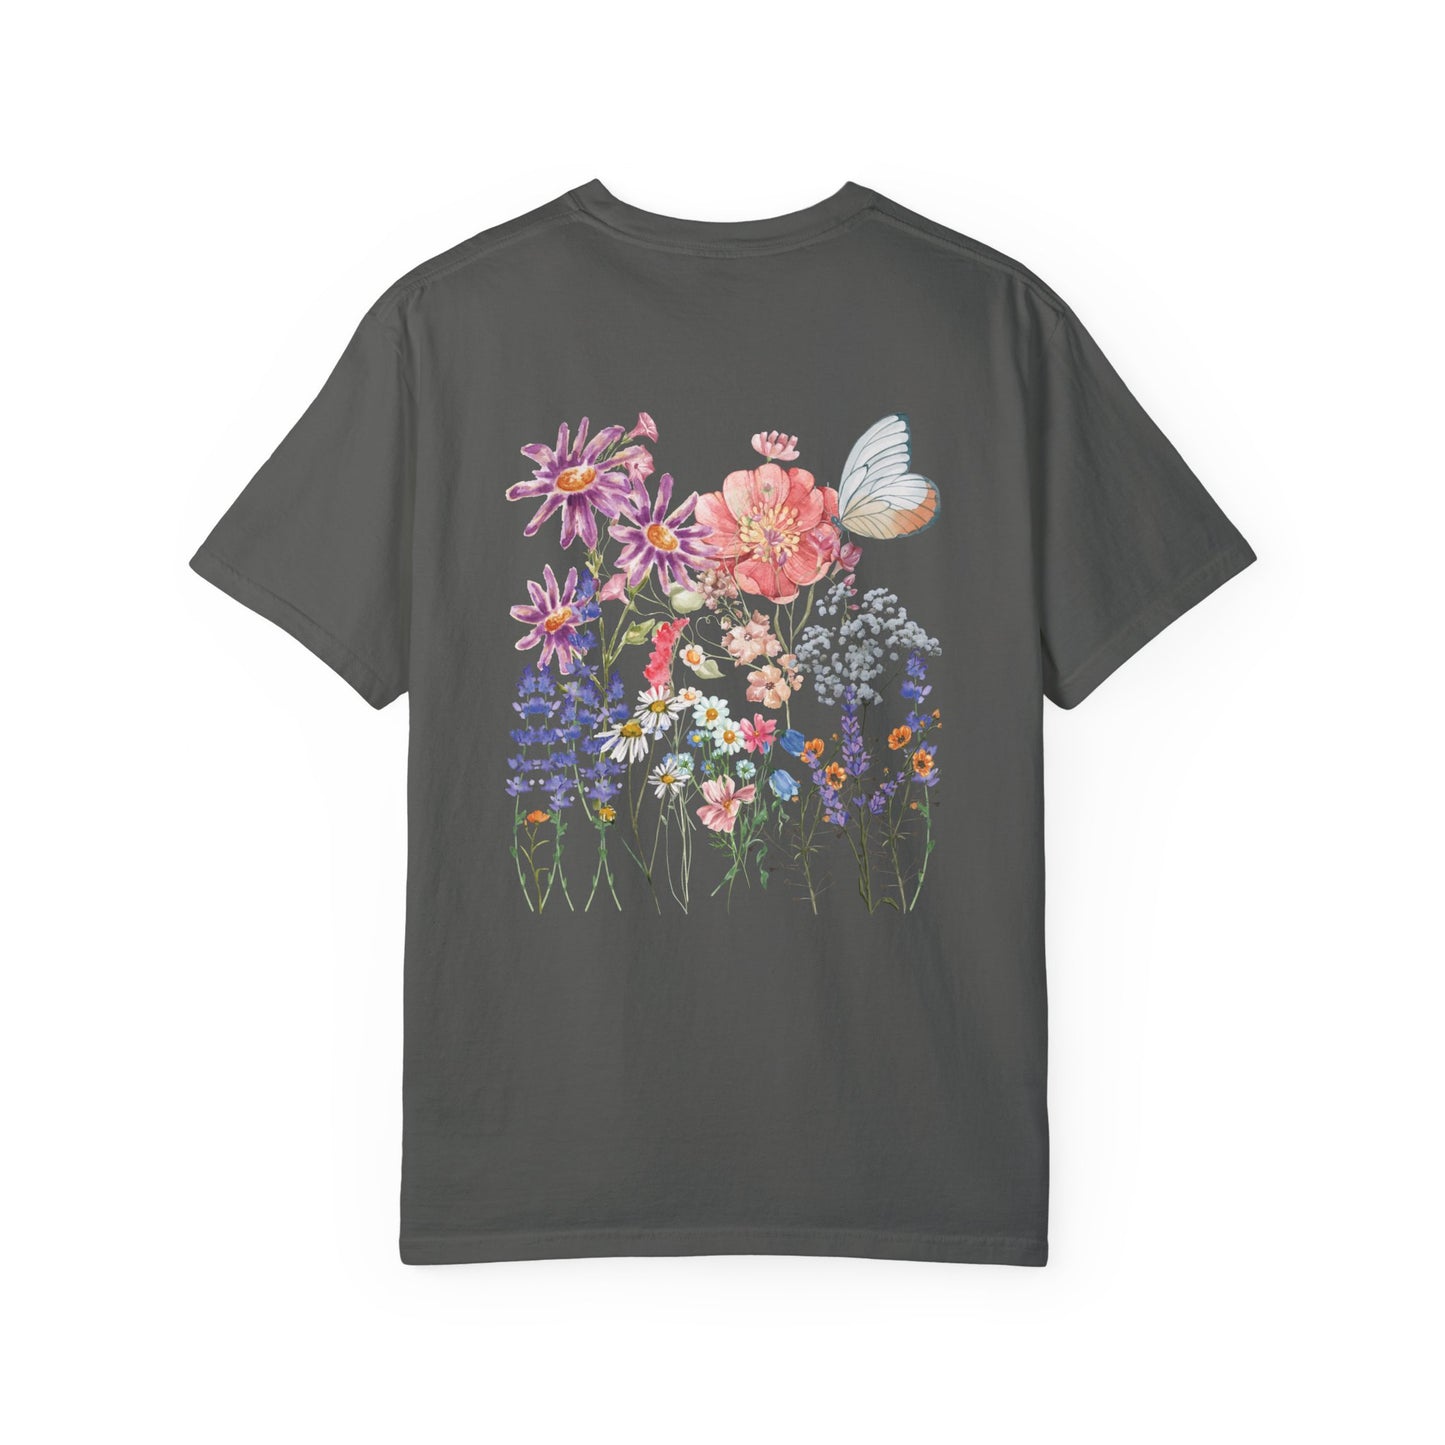 T-Shirt mit Wildblumen-Print auf der Rückseite und kleinem Design auf der Vorderseite.